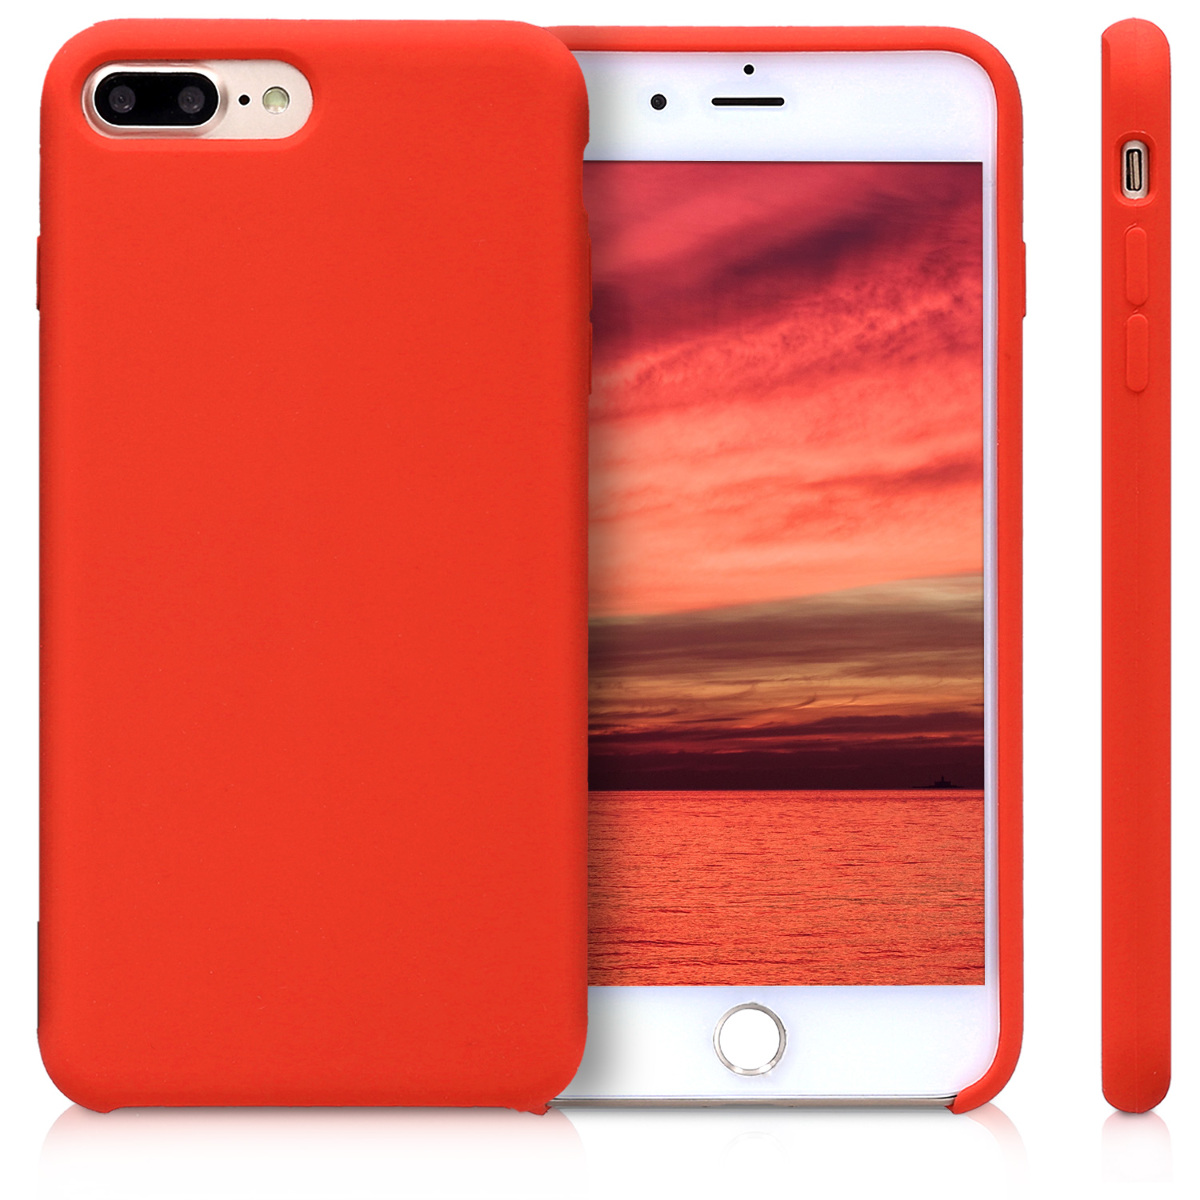 Красный чехол для телефона. Iphone 8 Plus красный. Iphone 7 Plus красный. Iphone 8 Plus красный чехол. Чехол на 7 Plus айфон красный.